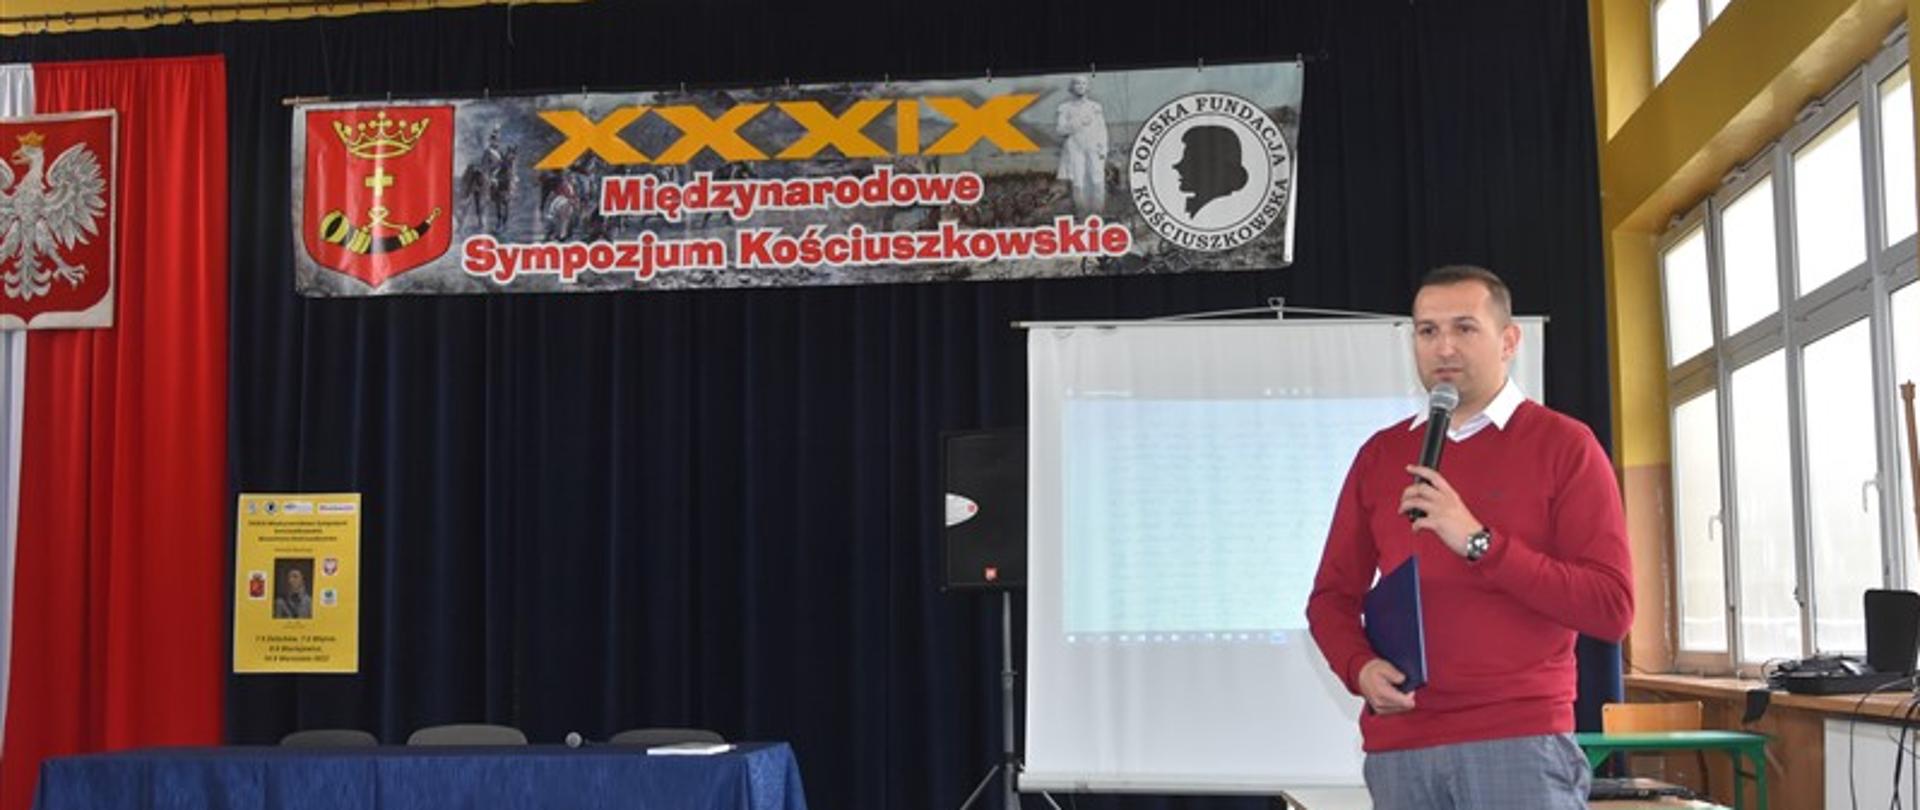 XXXIX Międzynarodowe Sympozjum Kościuszkowskie - Maciejowice